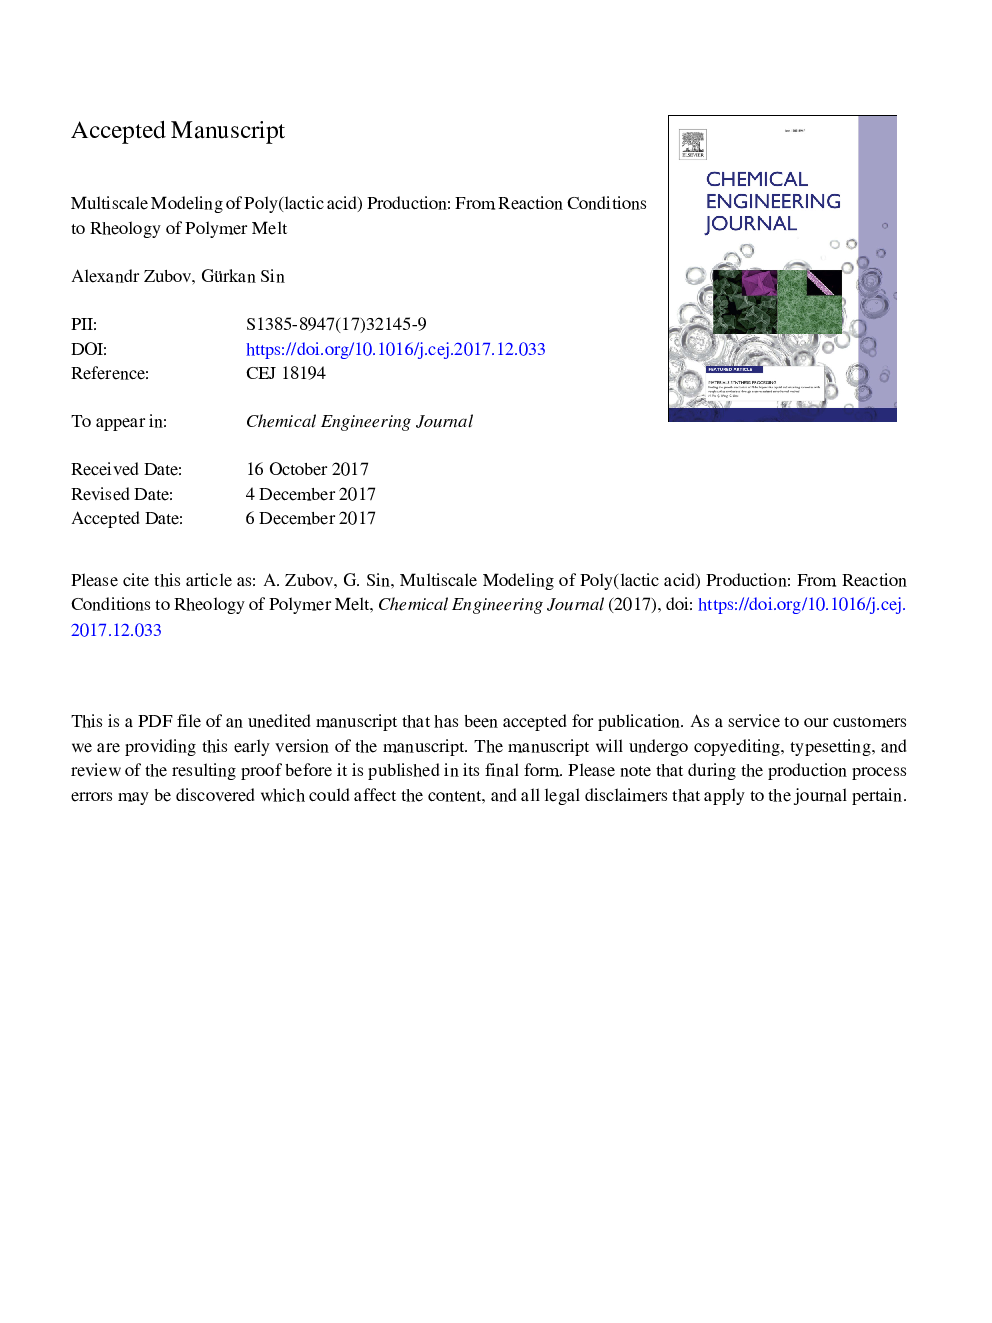 مدل سازی چندتایی پلی (اسید لاکتیک) تولید: از شرایط واکنش به ریولاسیون ذوب پلیمر 